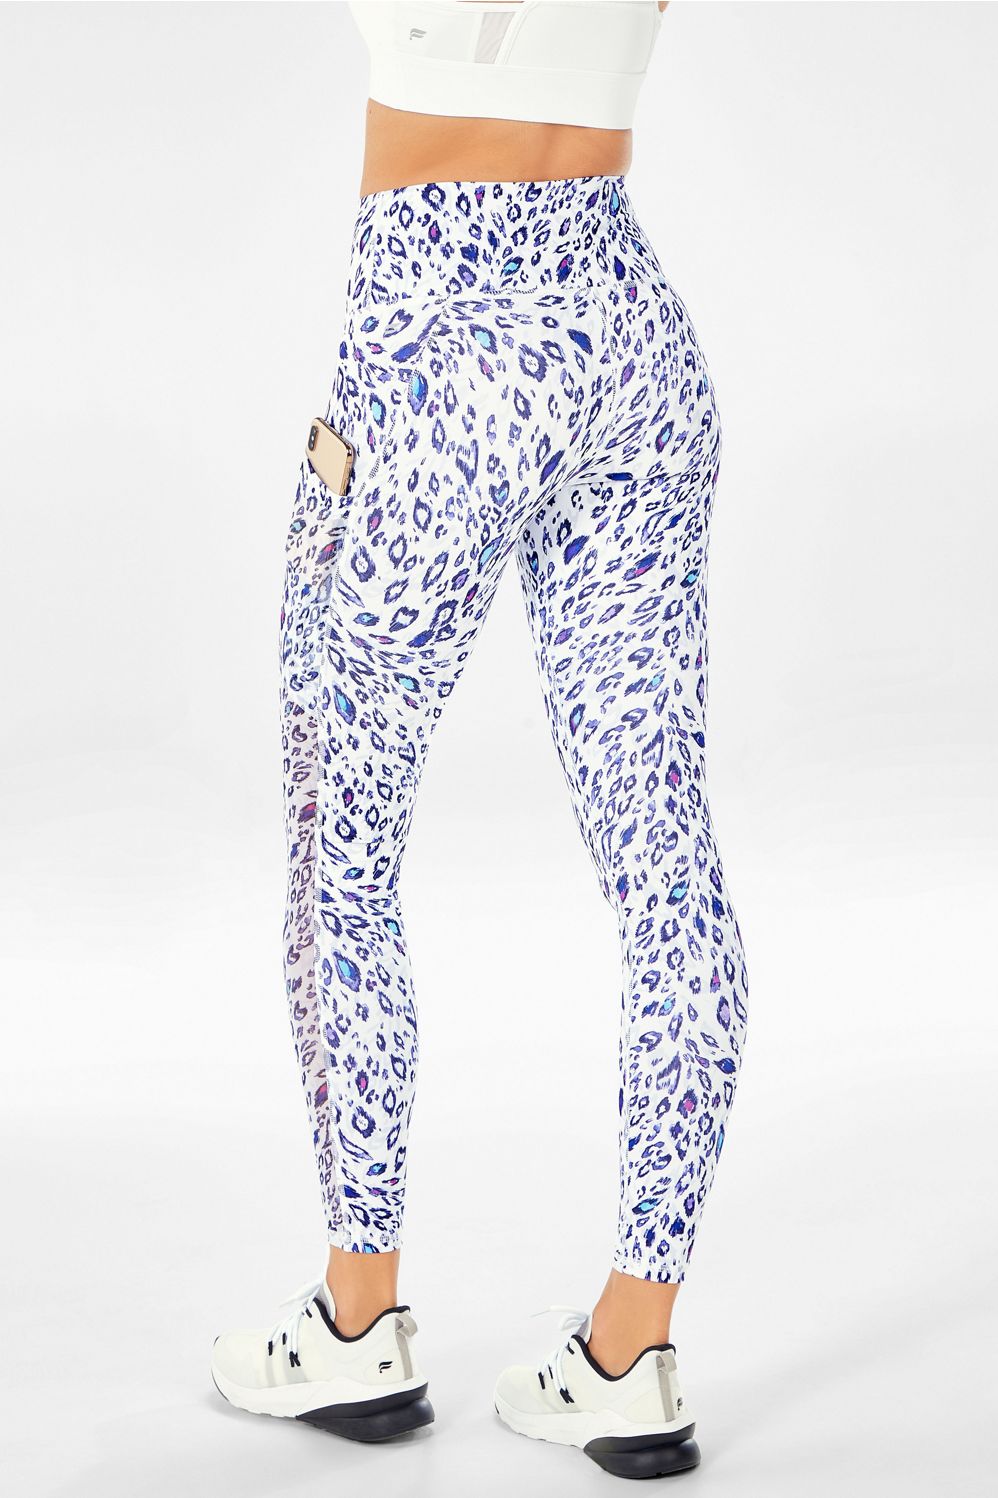 Mila High-Waisted Pocket Legging - White Glam Leopard